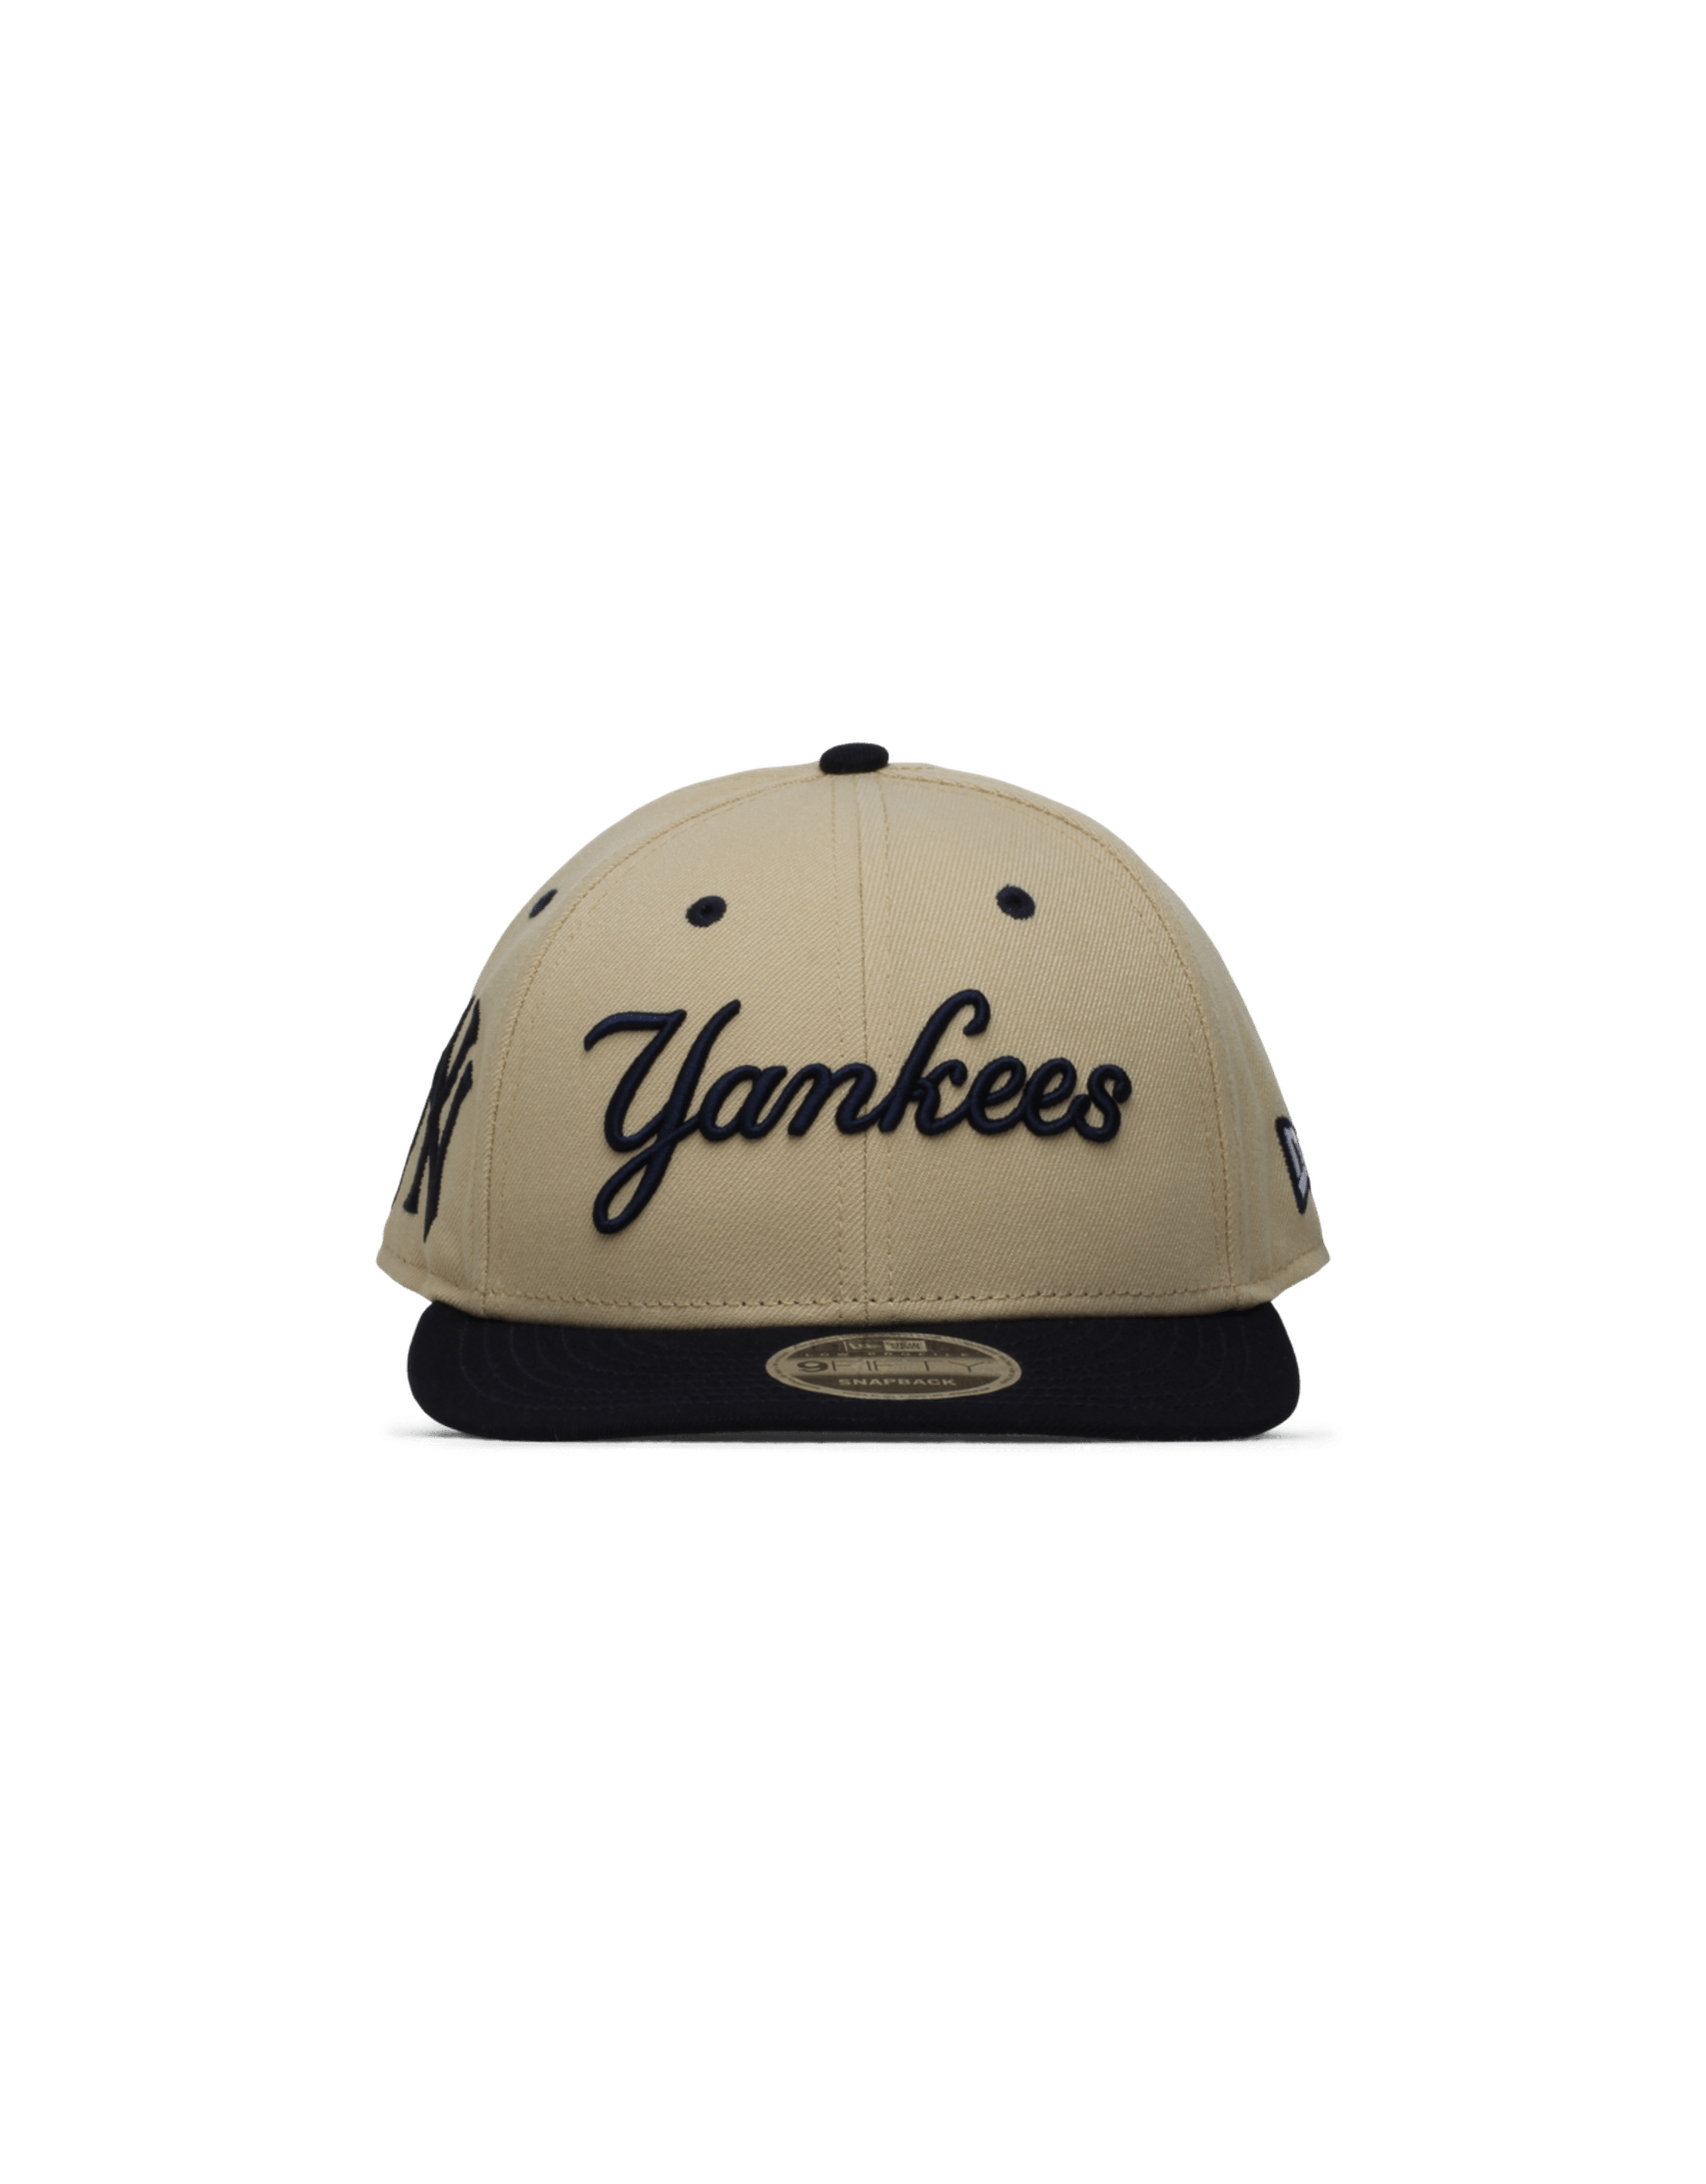 NY Yankees x FELT 9FIFTY Snapback Cap